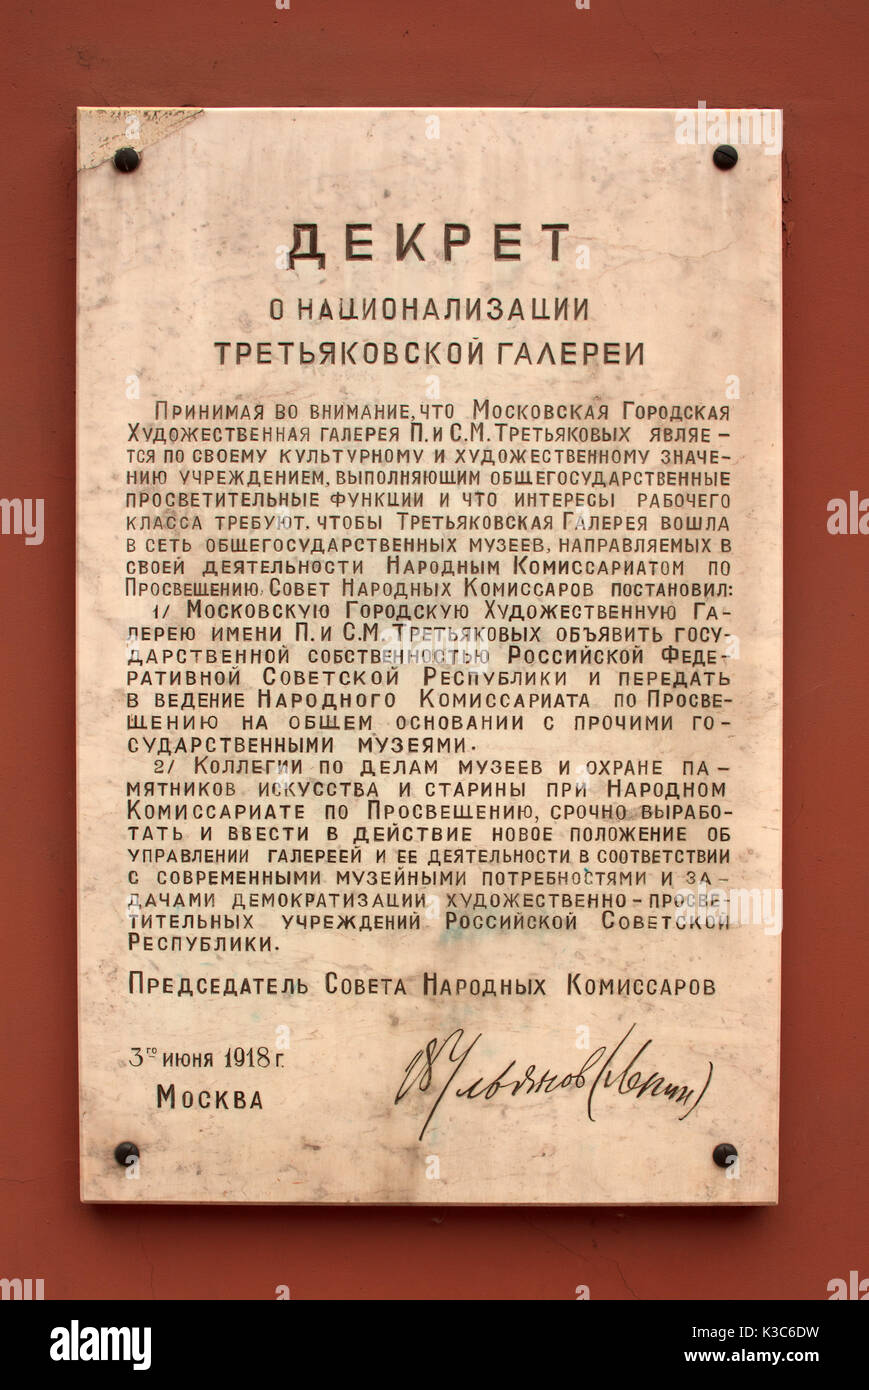 La plaque commémorative avec la Galerie nationale Tretiakov (décret de nationalisation signé par Lénine le 3 juin 1918 sur le mur de la galerie Tretiakov à Moscou Russie Banque D'Images